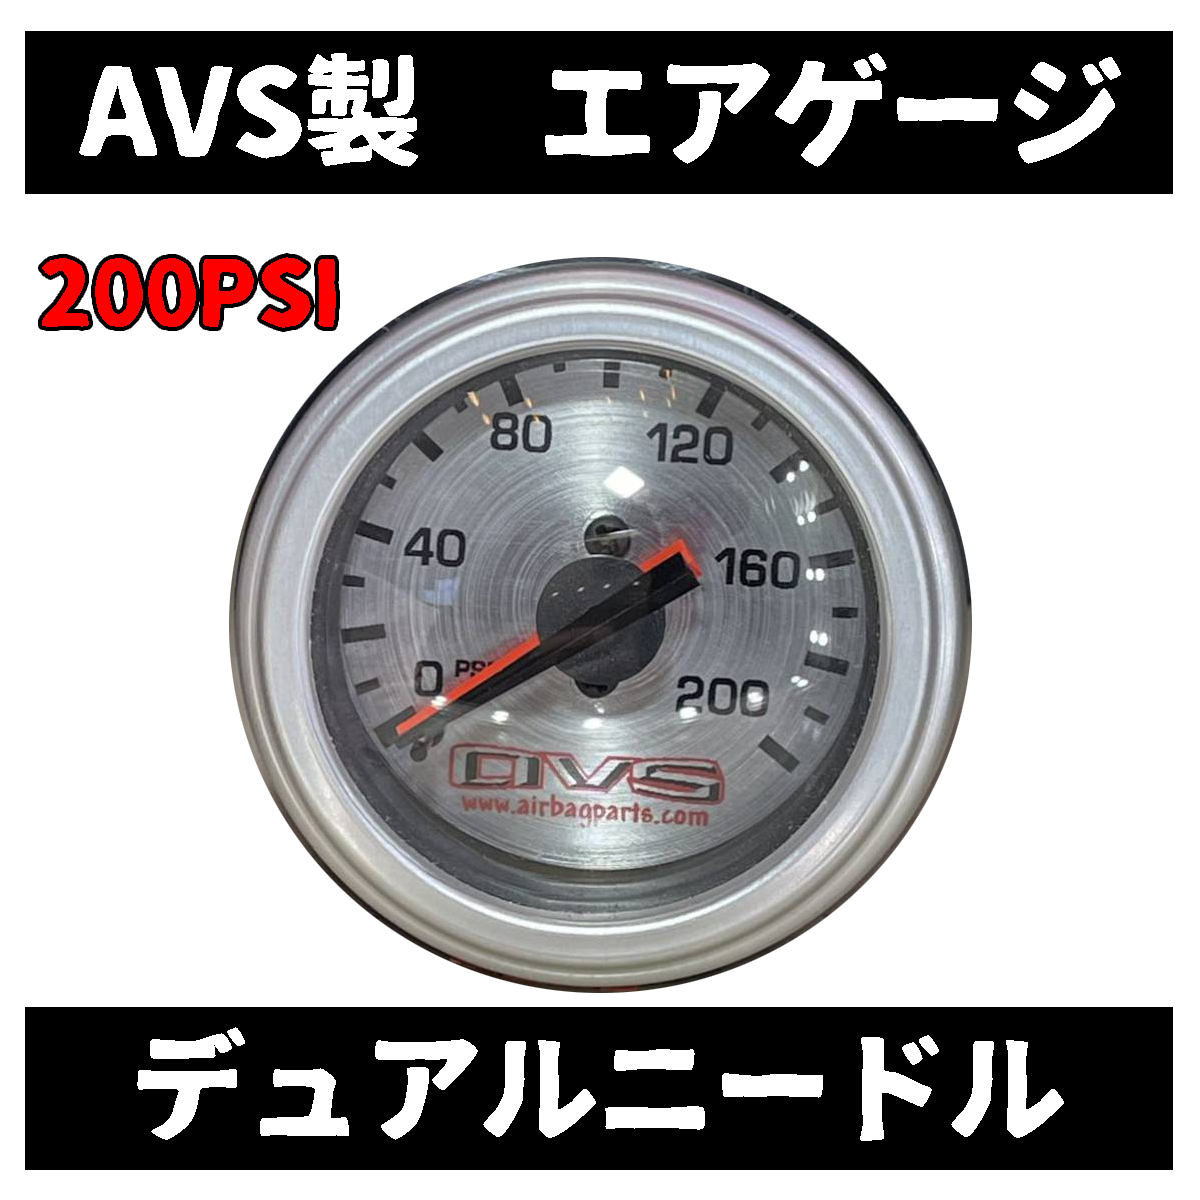 新品 AVS エアサス ゲージ メーター デュアルゲージ 200PSI対応 1/8NPT 検索VIAIR エアゲージの画像1